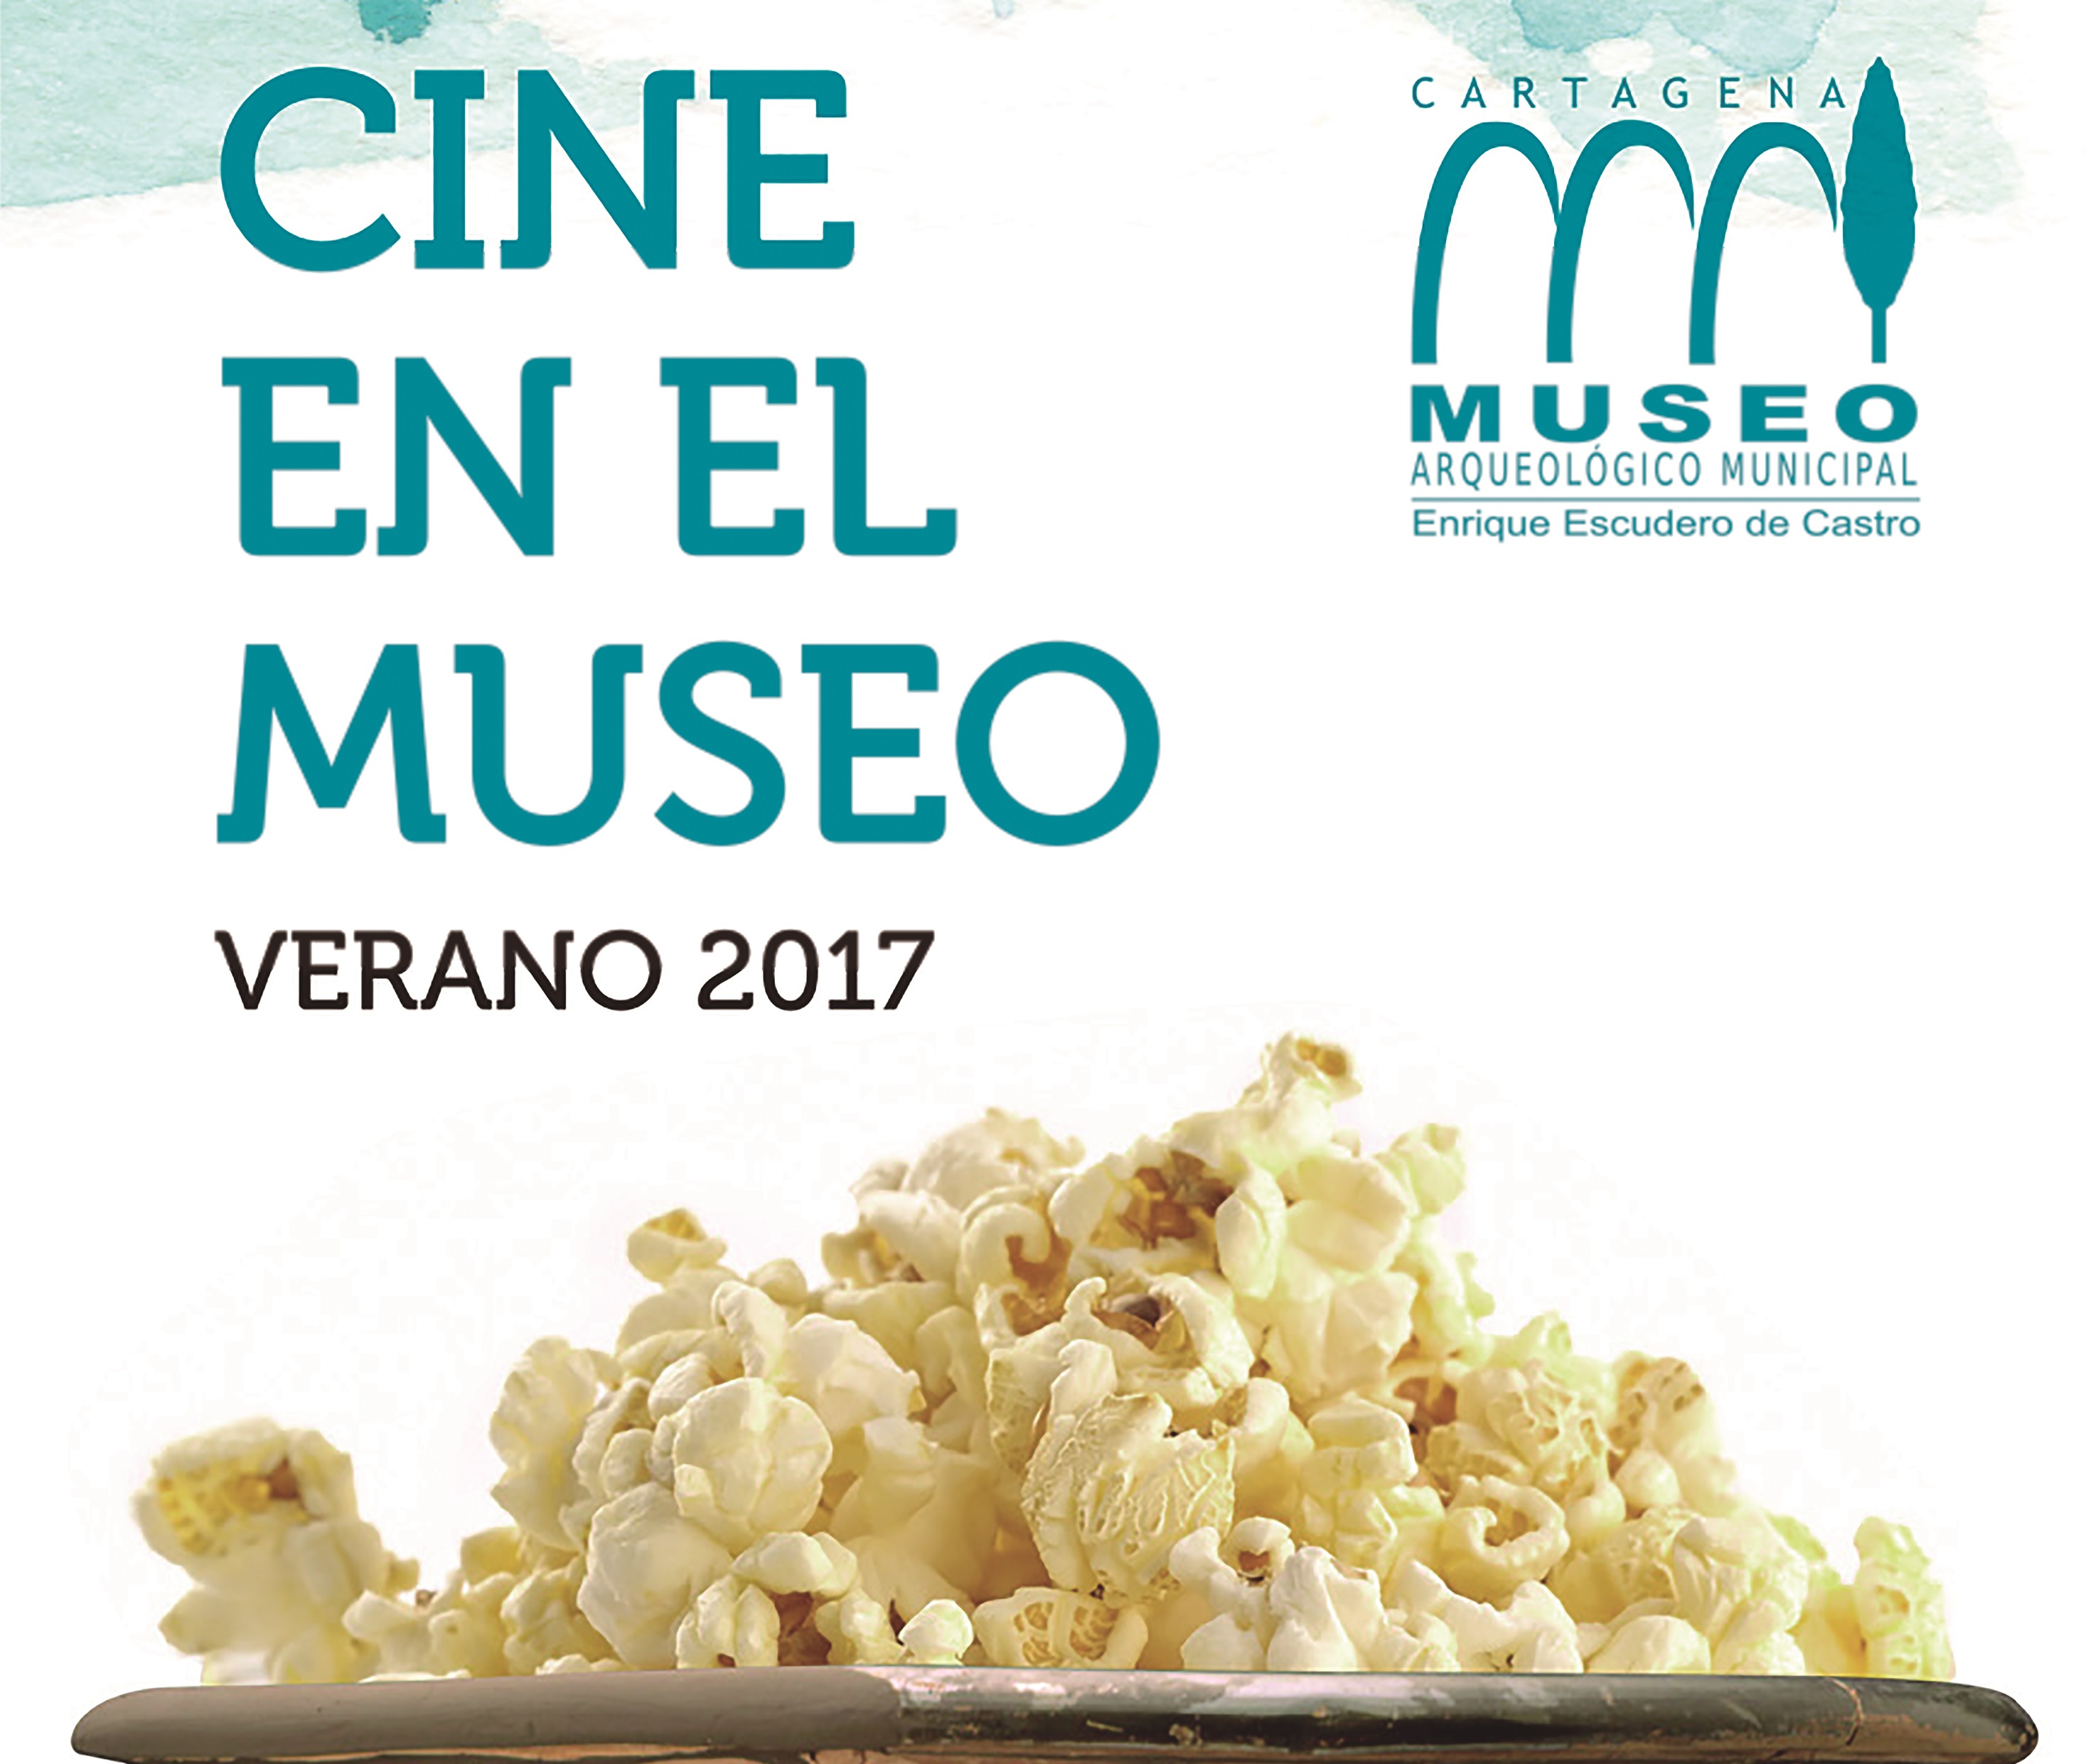 Cine en el Museo Arqueolgico Municipal Enrique Escudero